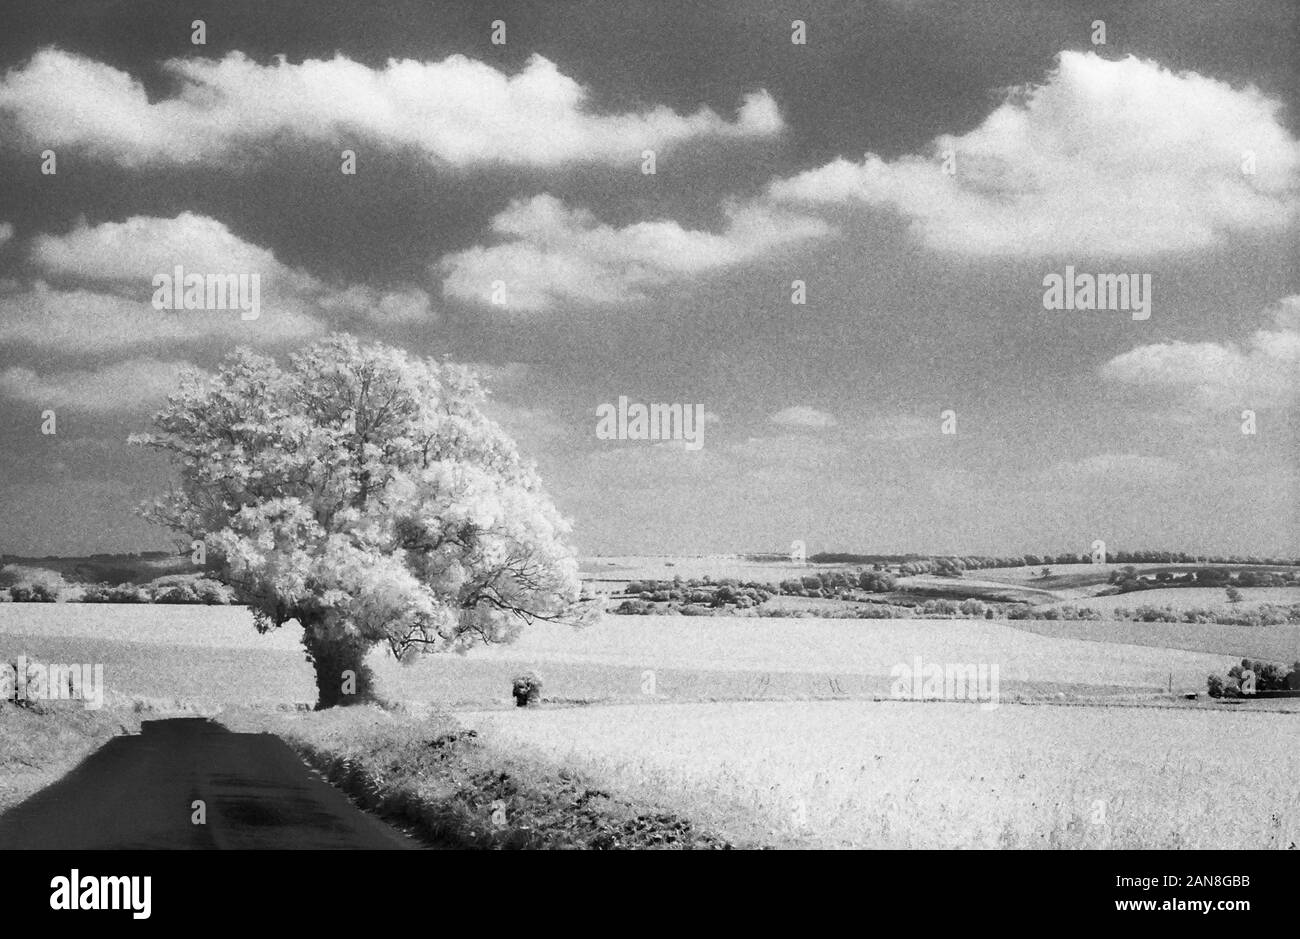 Étang de moutons Lane, près de Droxford, Hampshire, England, UK. Le noir et blanc l'infrarouge, filmstock avec sa structure de grain proéminent, à contraste élevé et lumineux brillant feuillage. Banque D'Images